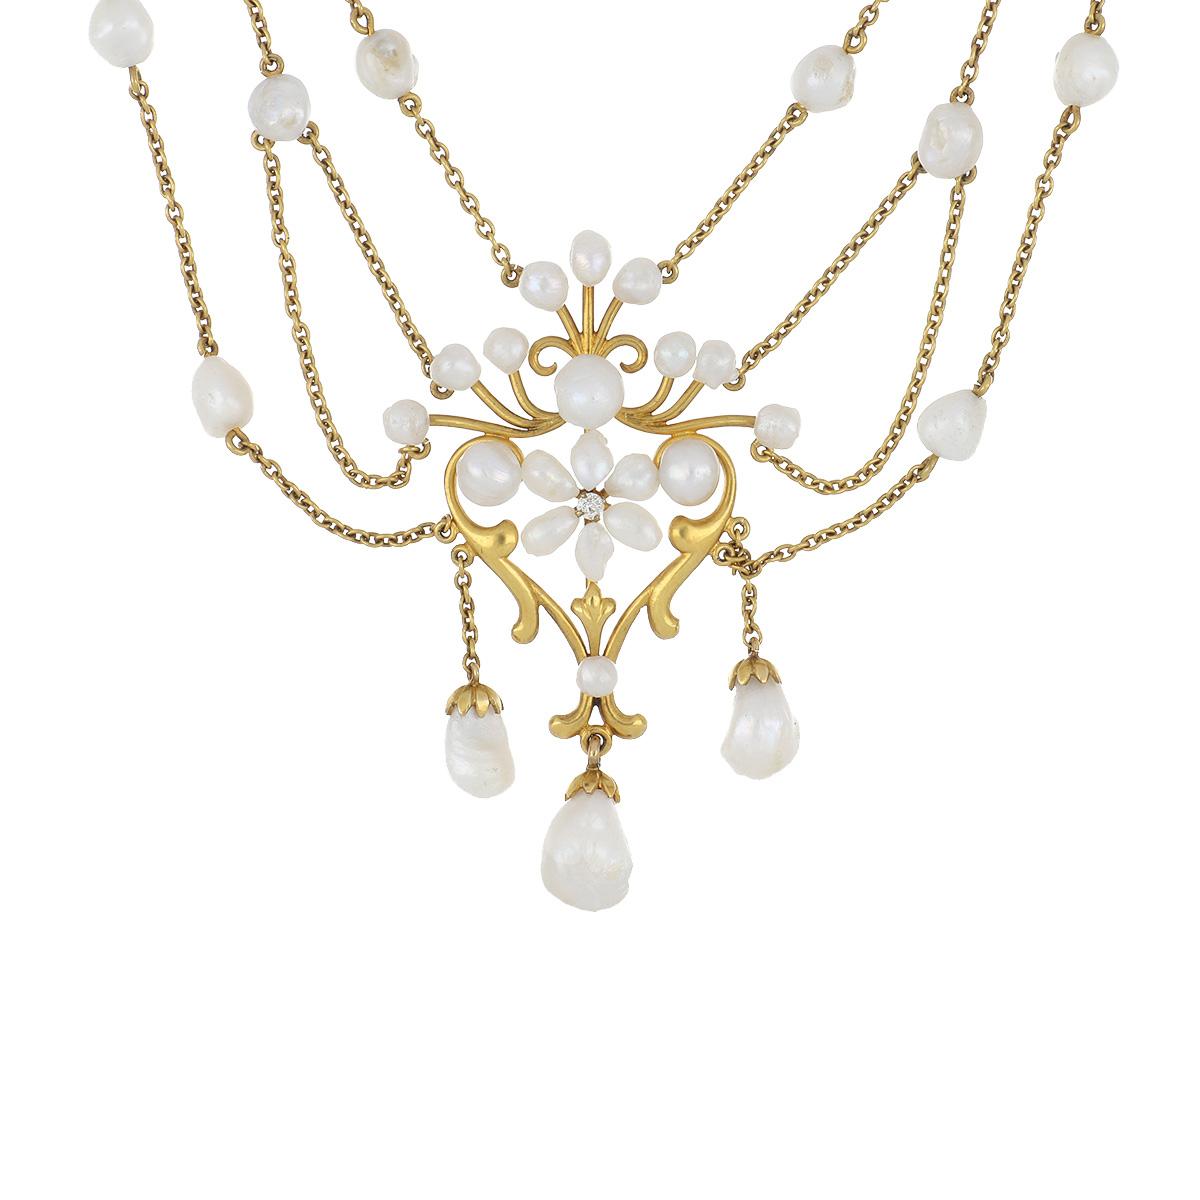 Jugendstil-Halskette aus 14-karätigem Gelbgold mit Blumenmotiven.  Es gibt 3 Röschen, die jeweils mit Diamanten und Süßwasserperlen besetzt sind.  Die Halskette misst 15 3/4 Zoll in der Länge. Um 1900.